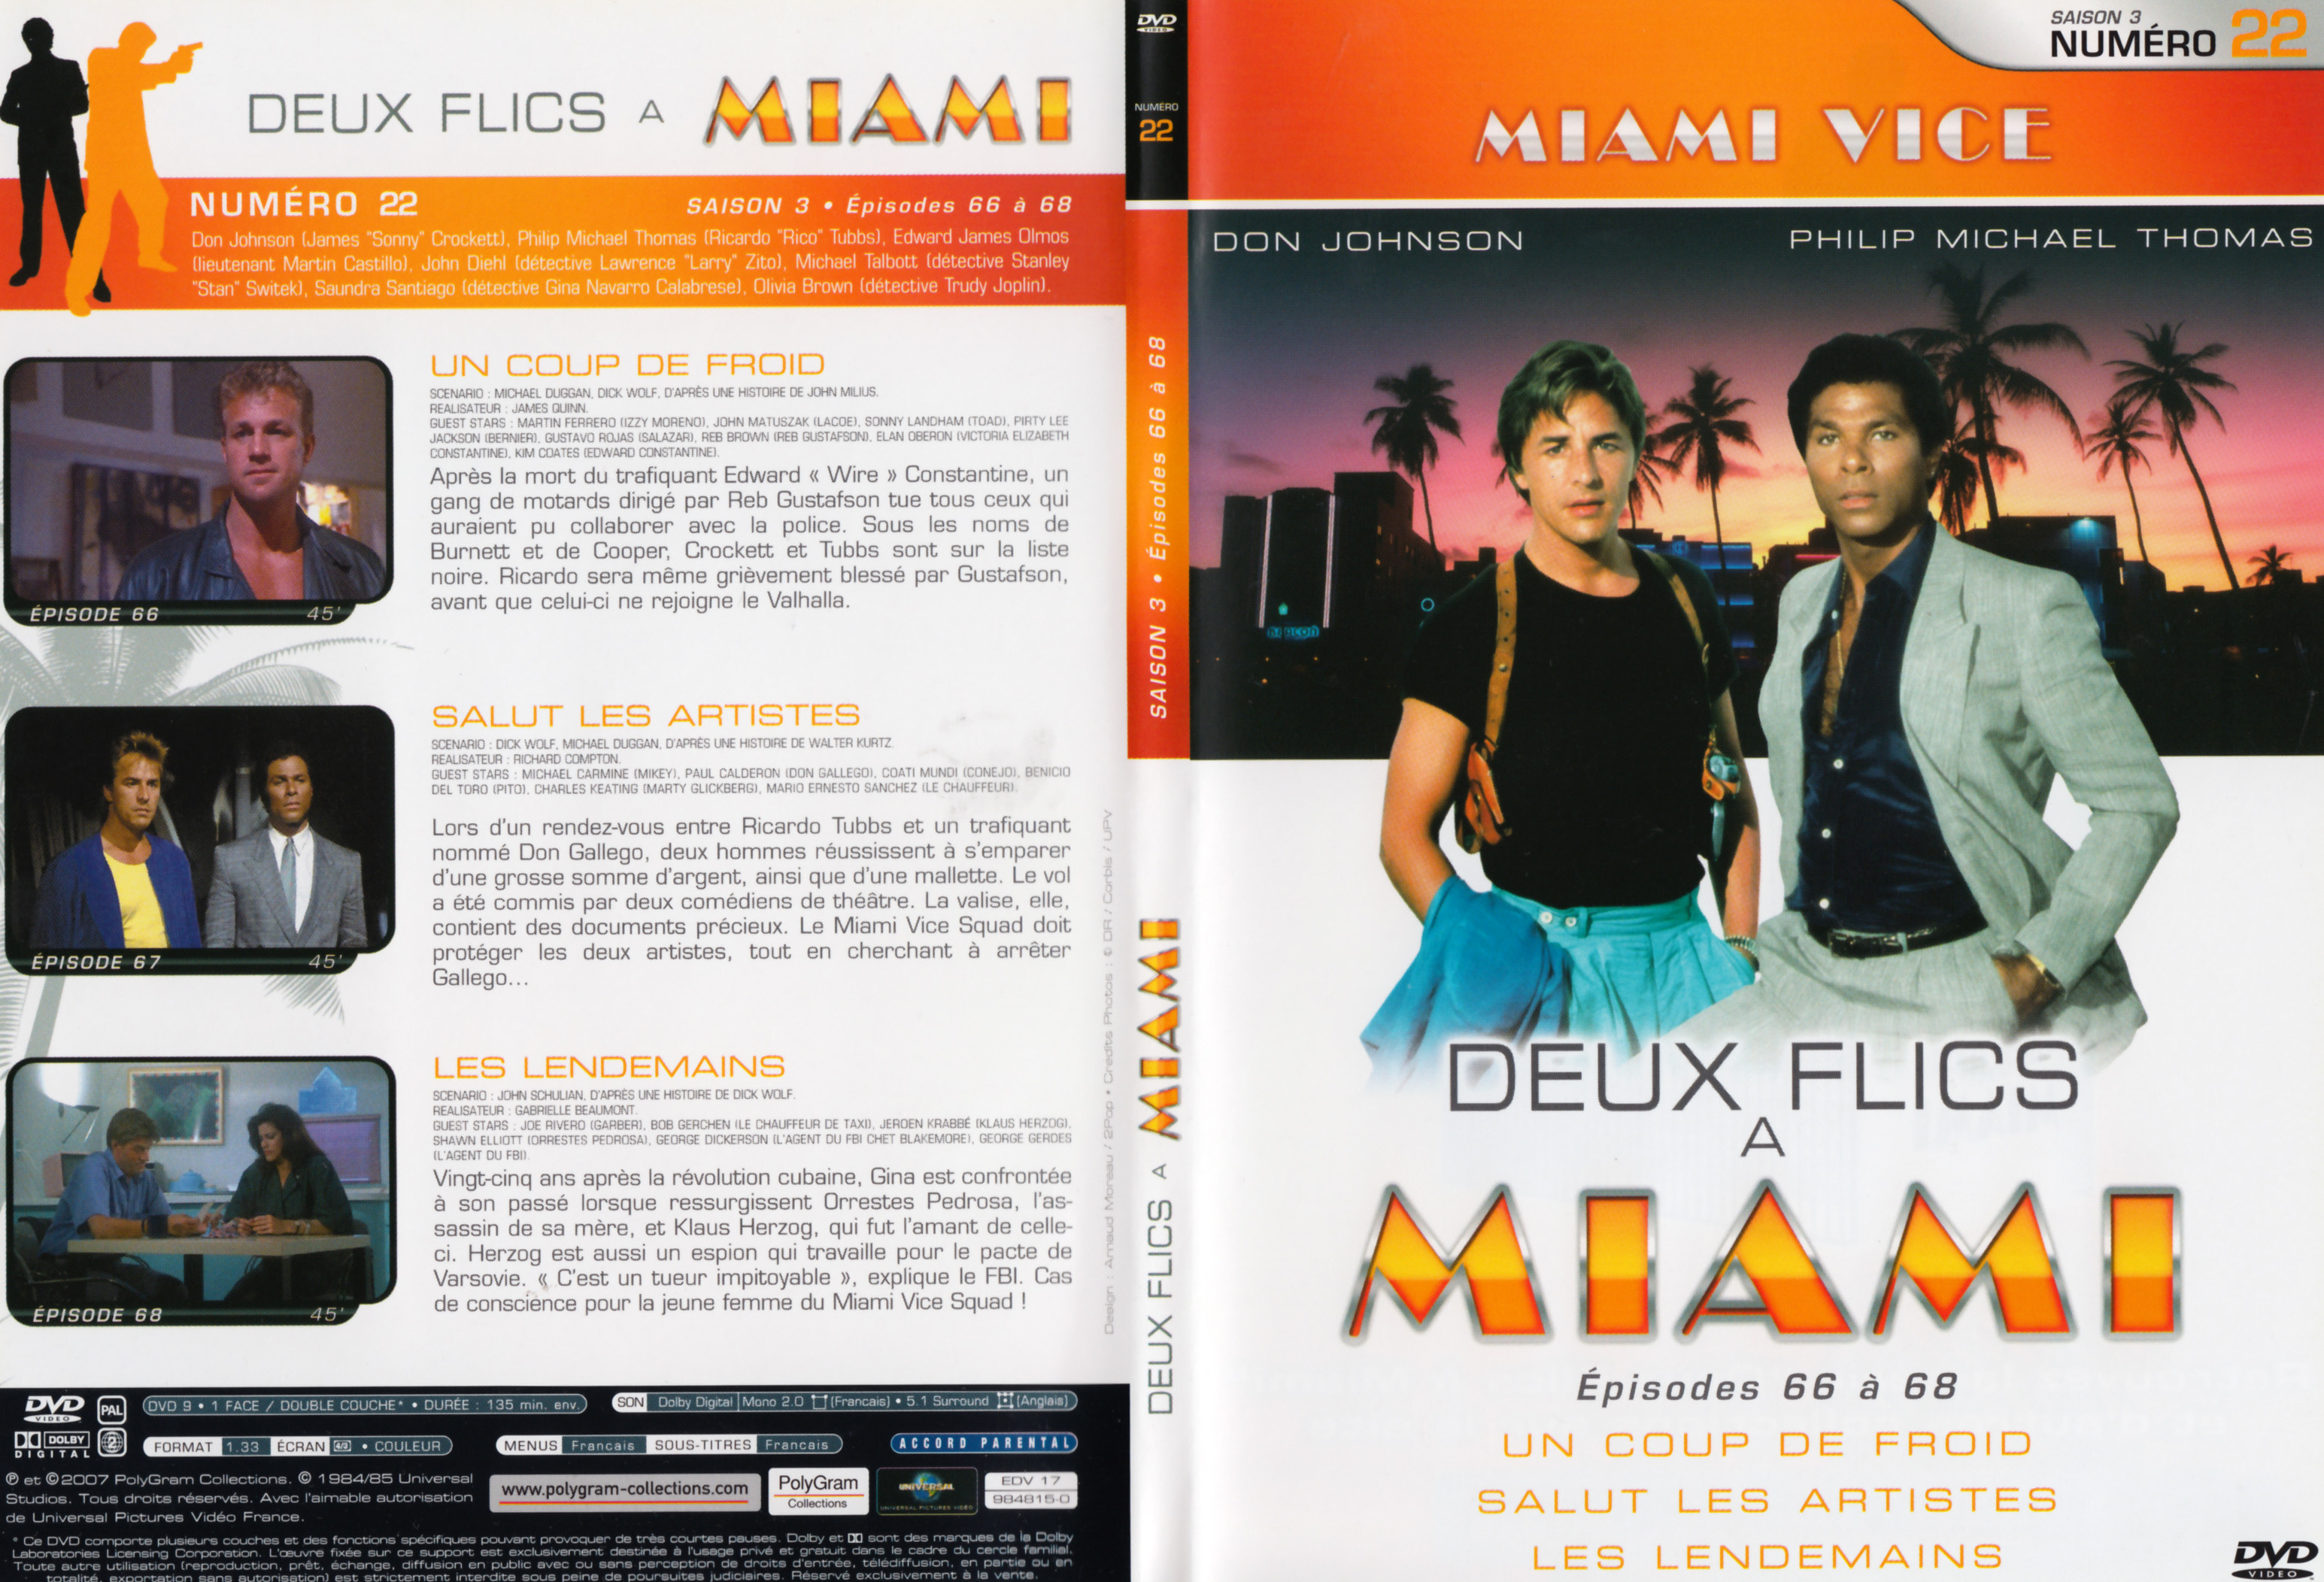 Jaquette DVD Deux flics  Miami Saison 3 vol 22